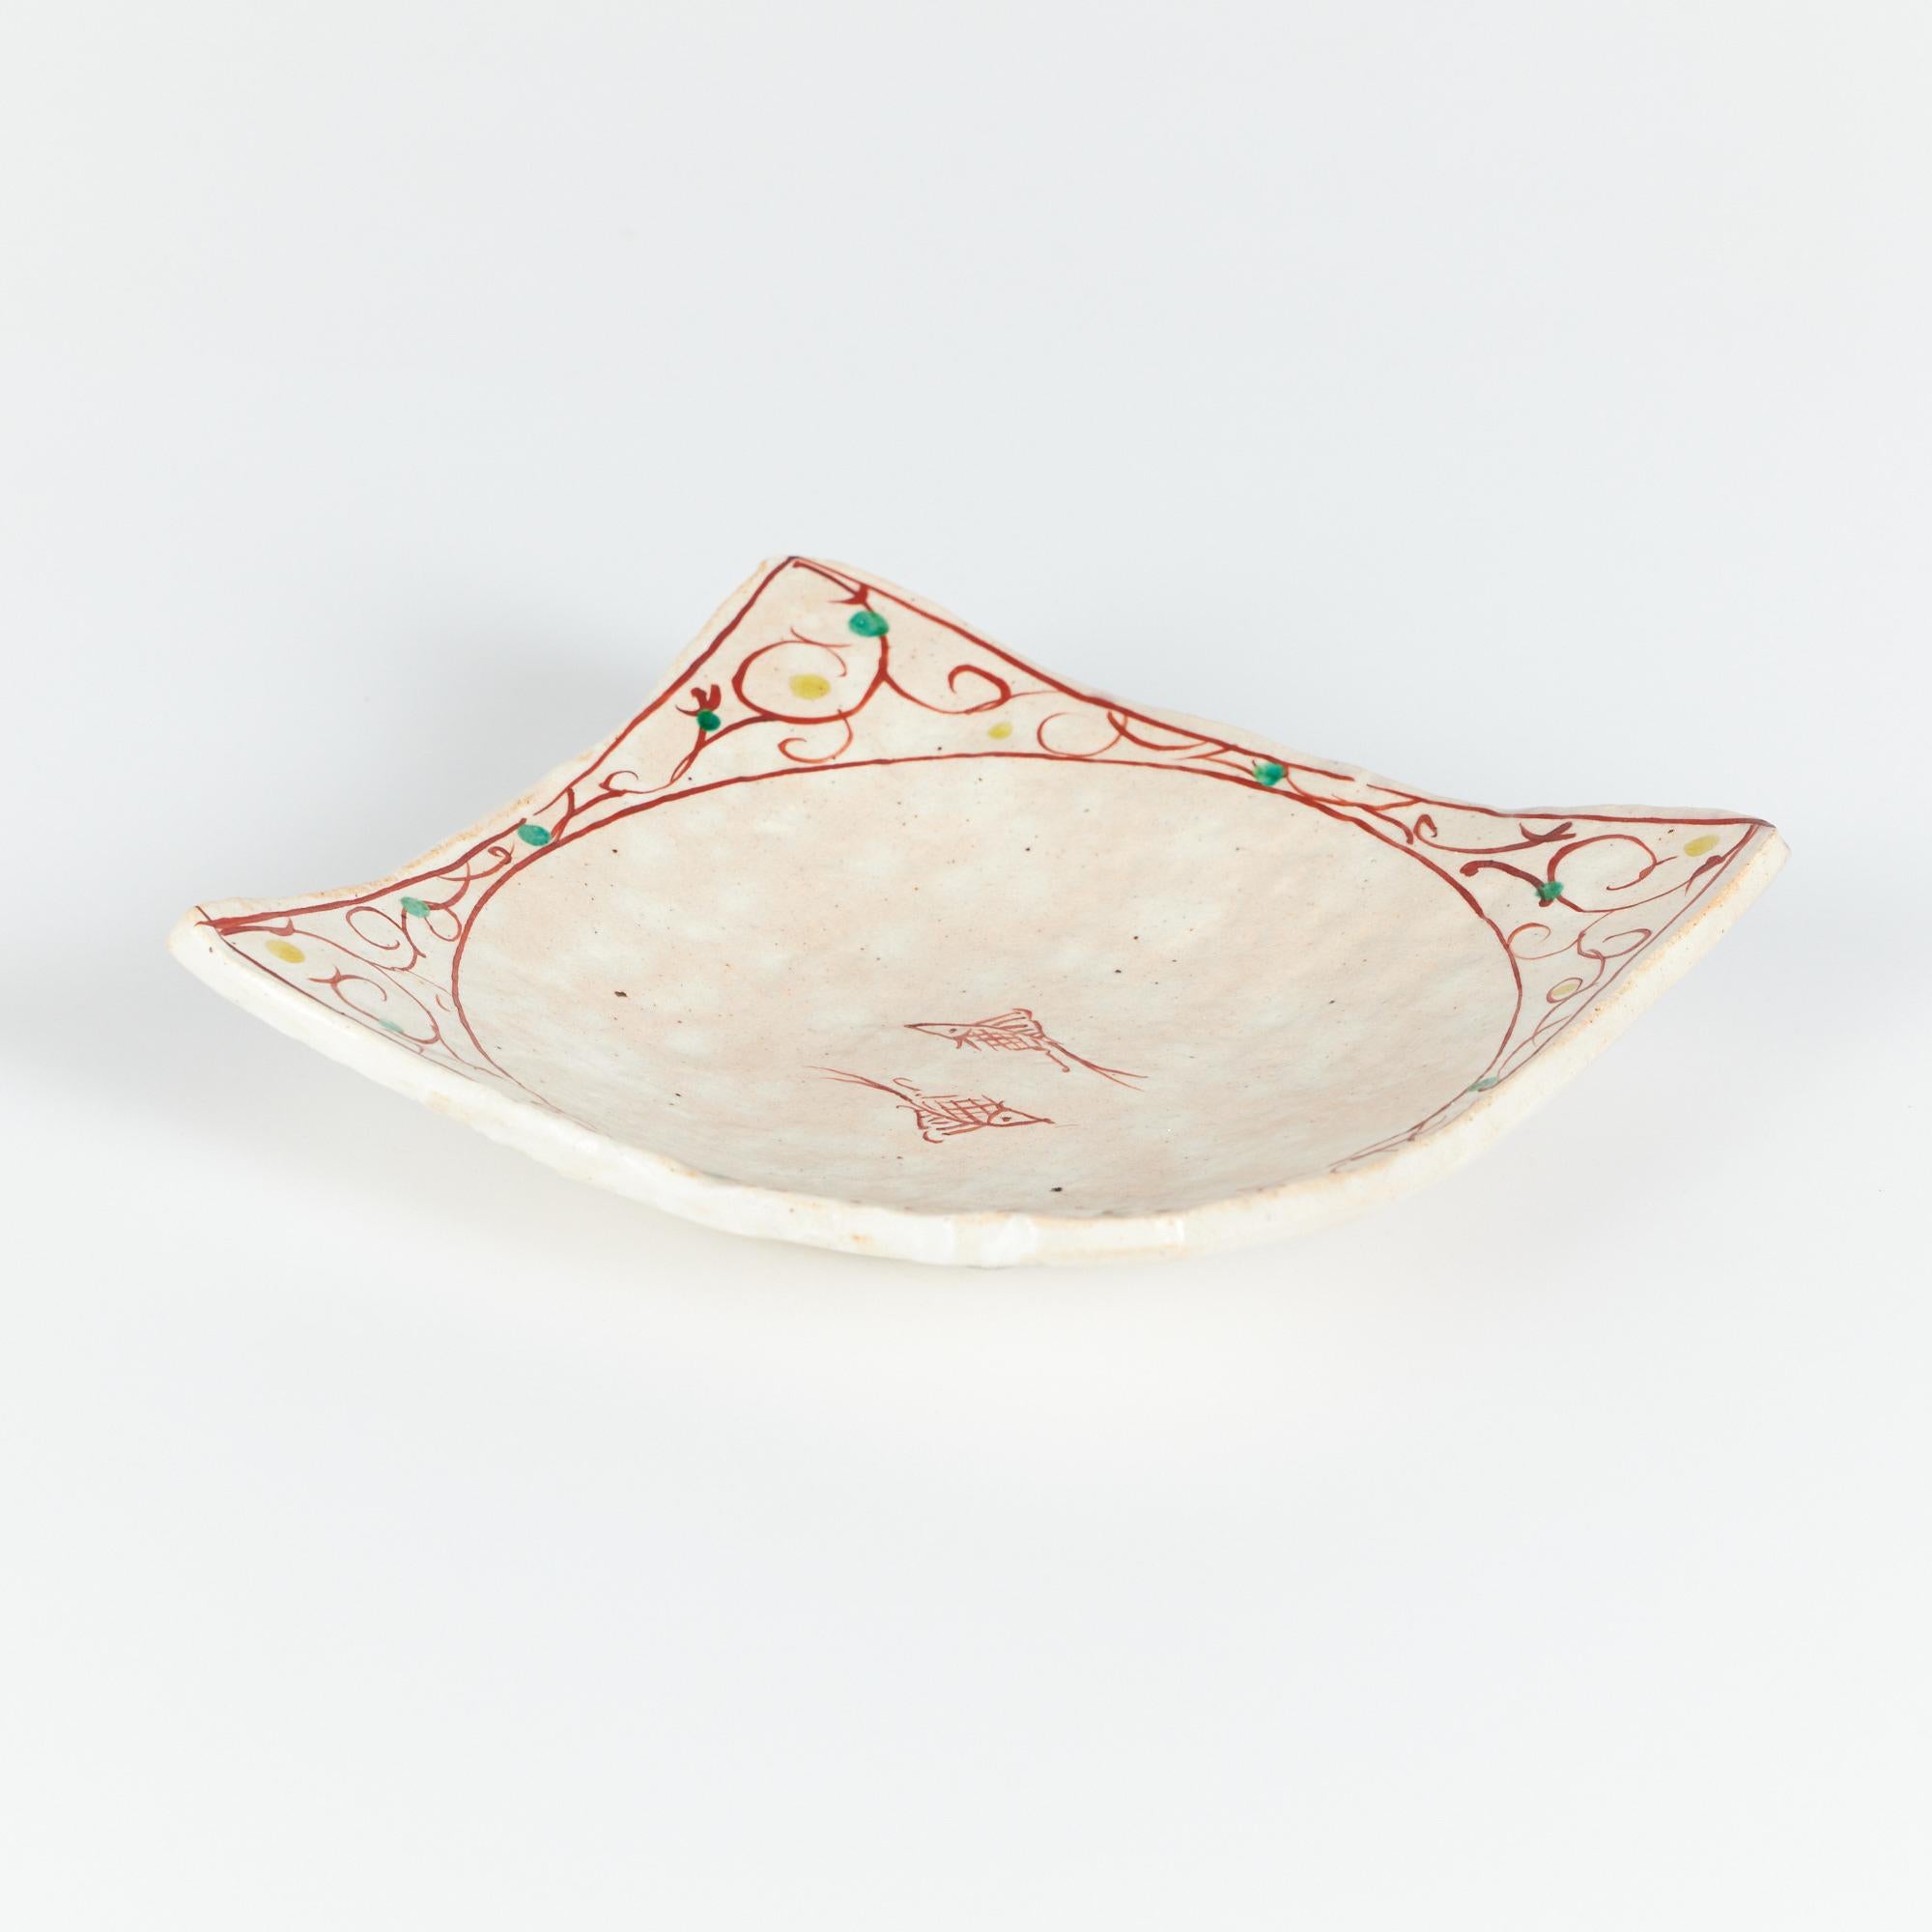 Der Keramikteller hat eine quadratische Form mit umgedrehten Ecken. Der Teller ist in einem weichen cremefarbenen und beigen Farbton glasiert, der durchgehend gesprenkelt ist. Das Stück ist mit zwei handgemalten roten Fischen in der Mitte des